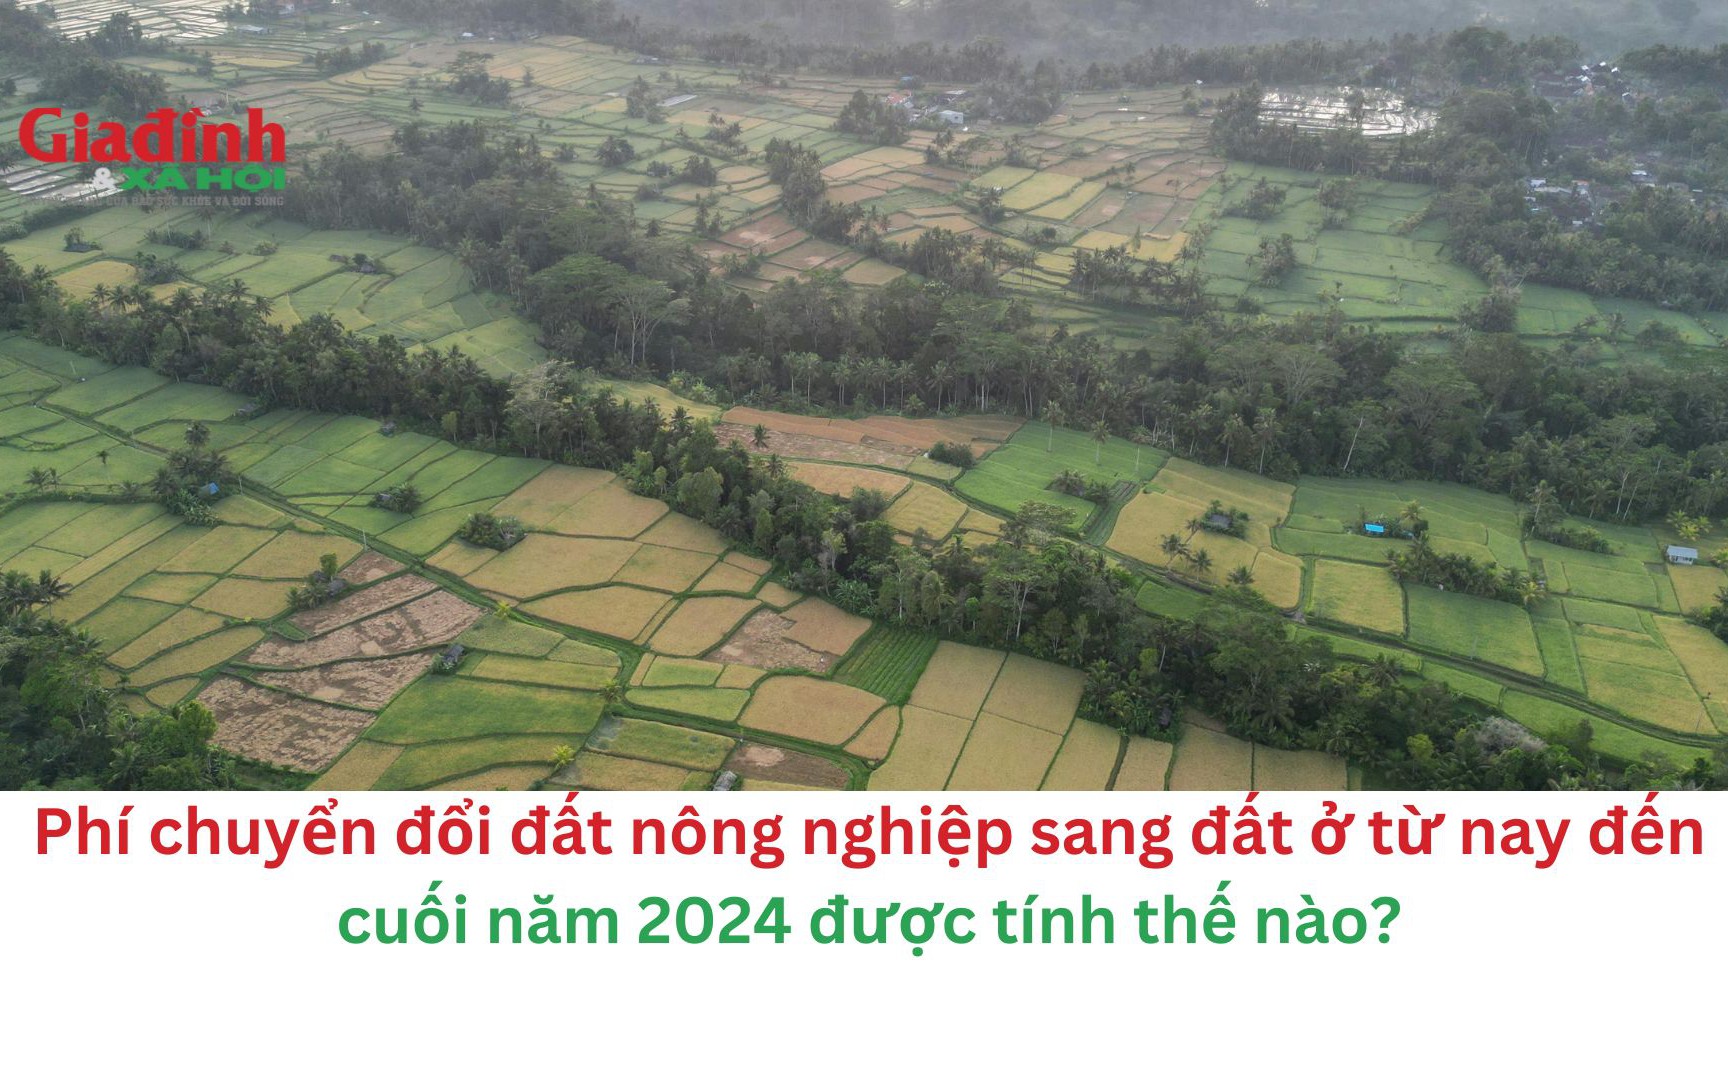 Phí chuyển đổi đất nông nghiệp sang đất ở từ nay đến cuối năm 2024 được tính thế nào?